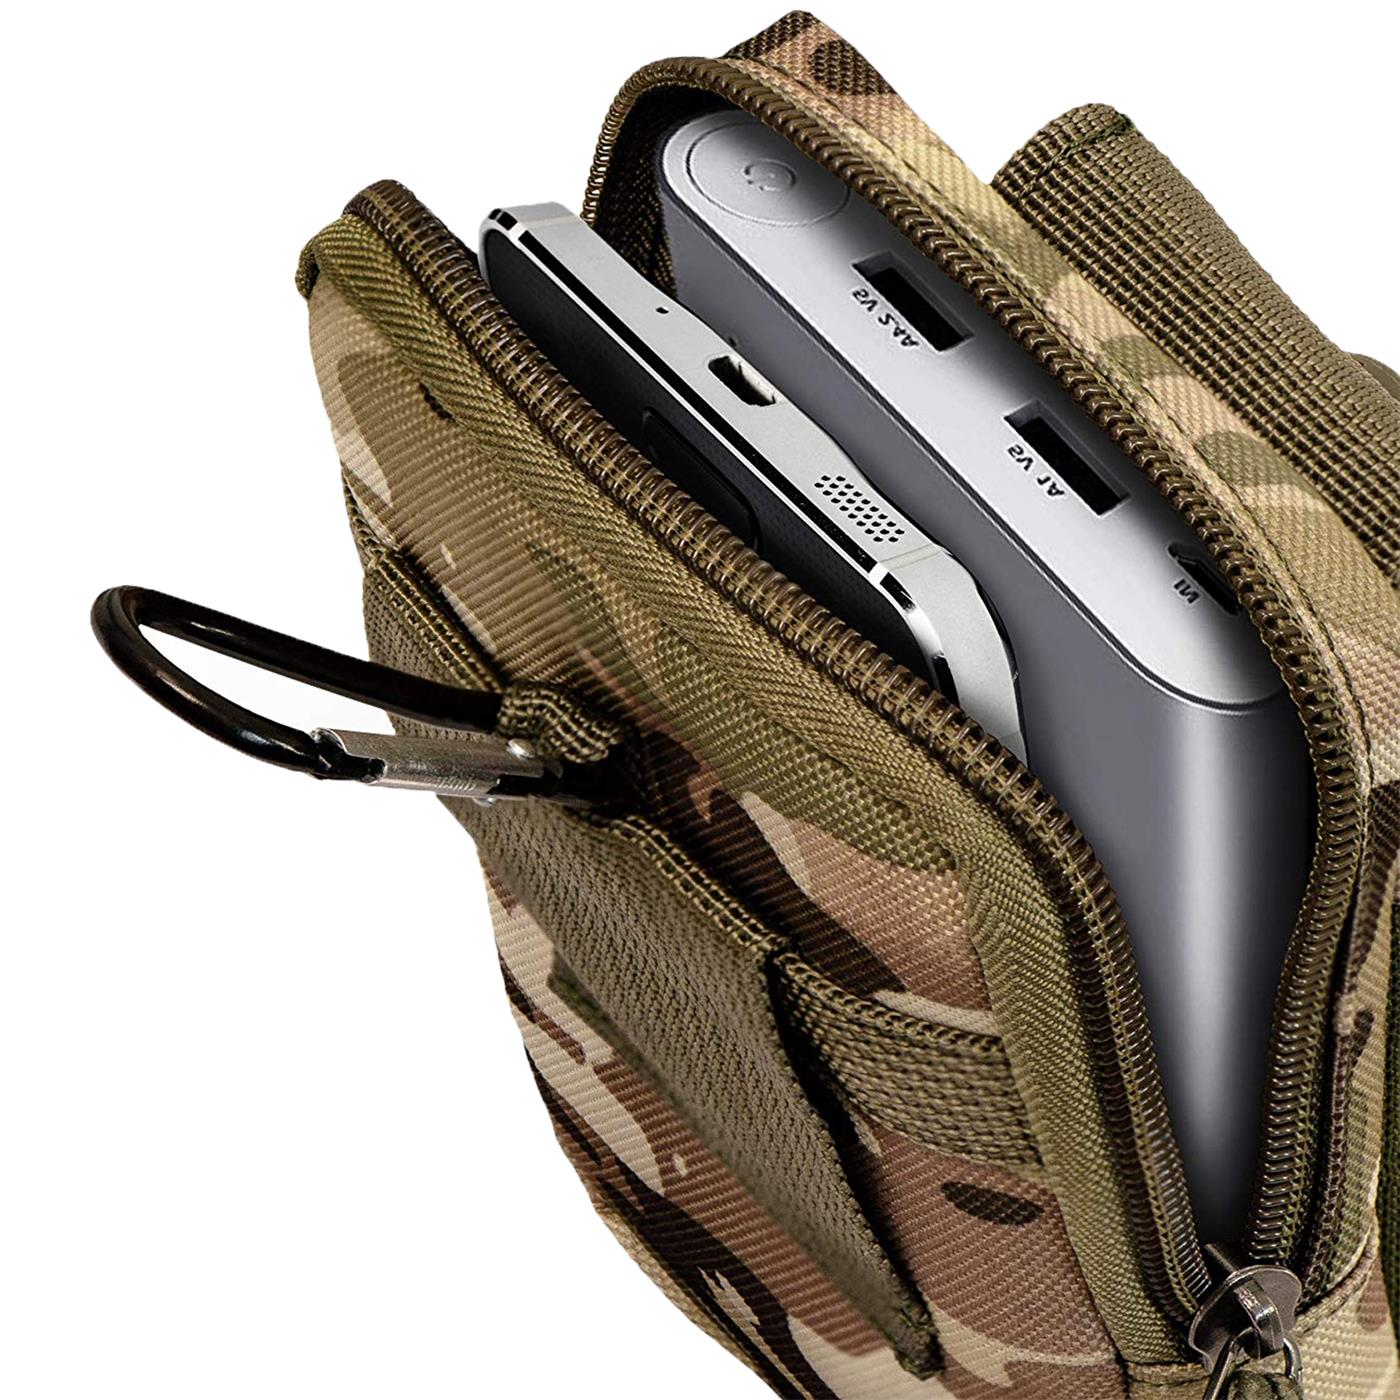 Indexbild 11 - Gürtel Tasche Für Samsung Galaxy Handy Hülle Schutzhülle Case Clip Etui Nylon